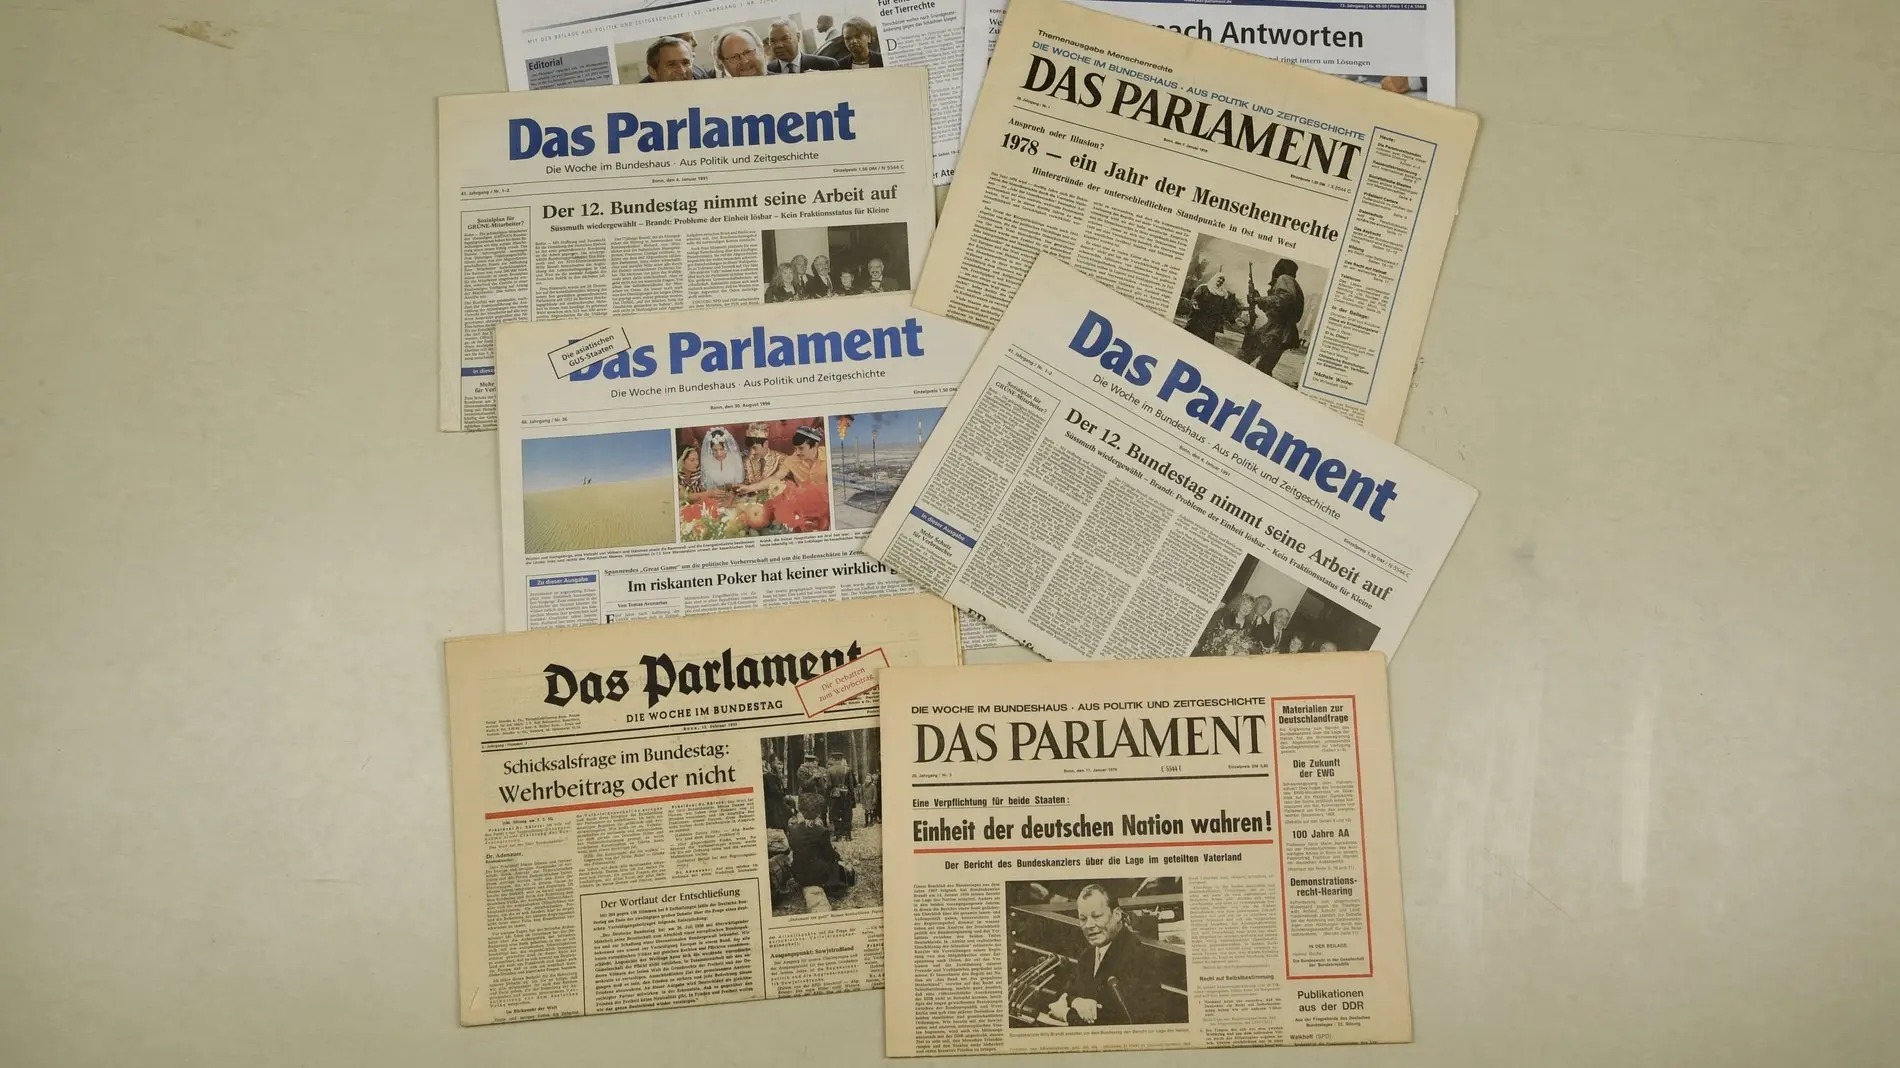 Collage aus den Titelseiten "Das Parlament" über mehrere Jahrzehnte